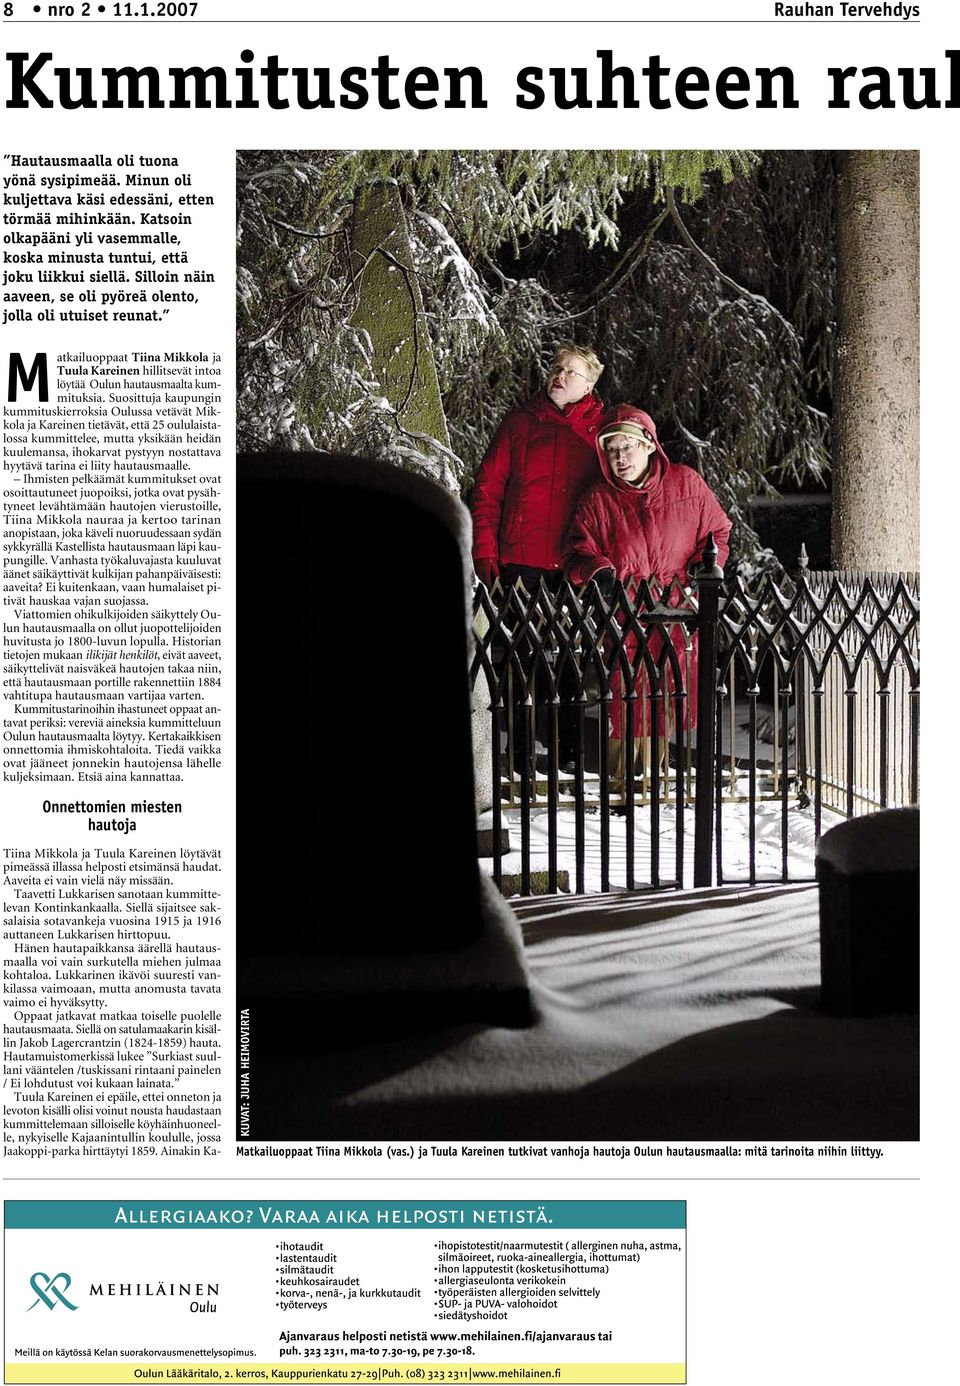 Matkailuoppaat Tiina Mikkola ja Tuula Kareinen hillitsevät intoa löytää Oulun hautausmaalta kummituksia.